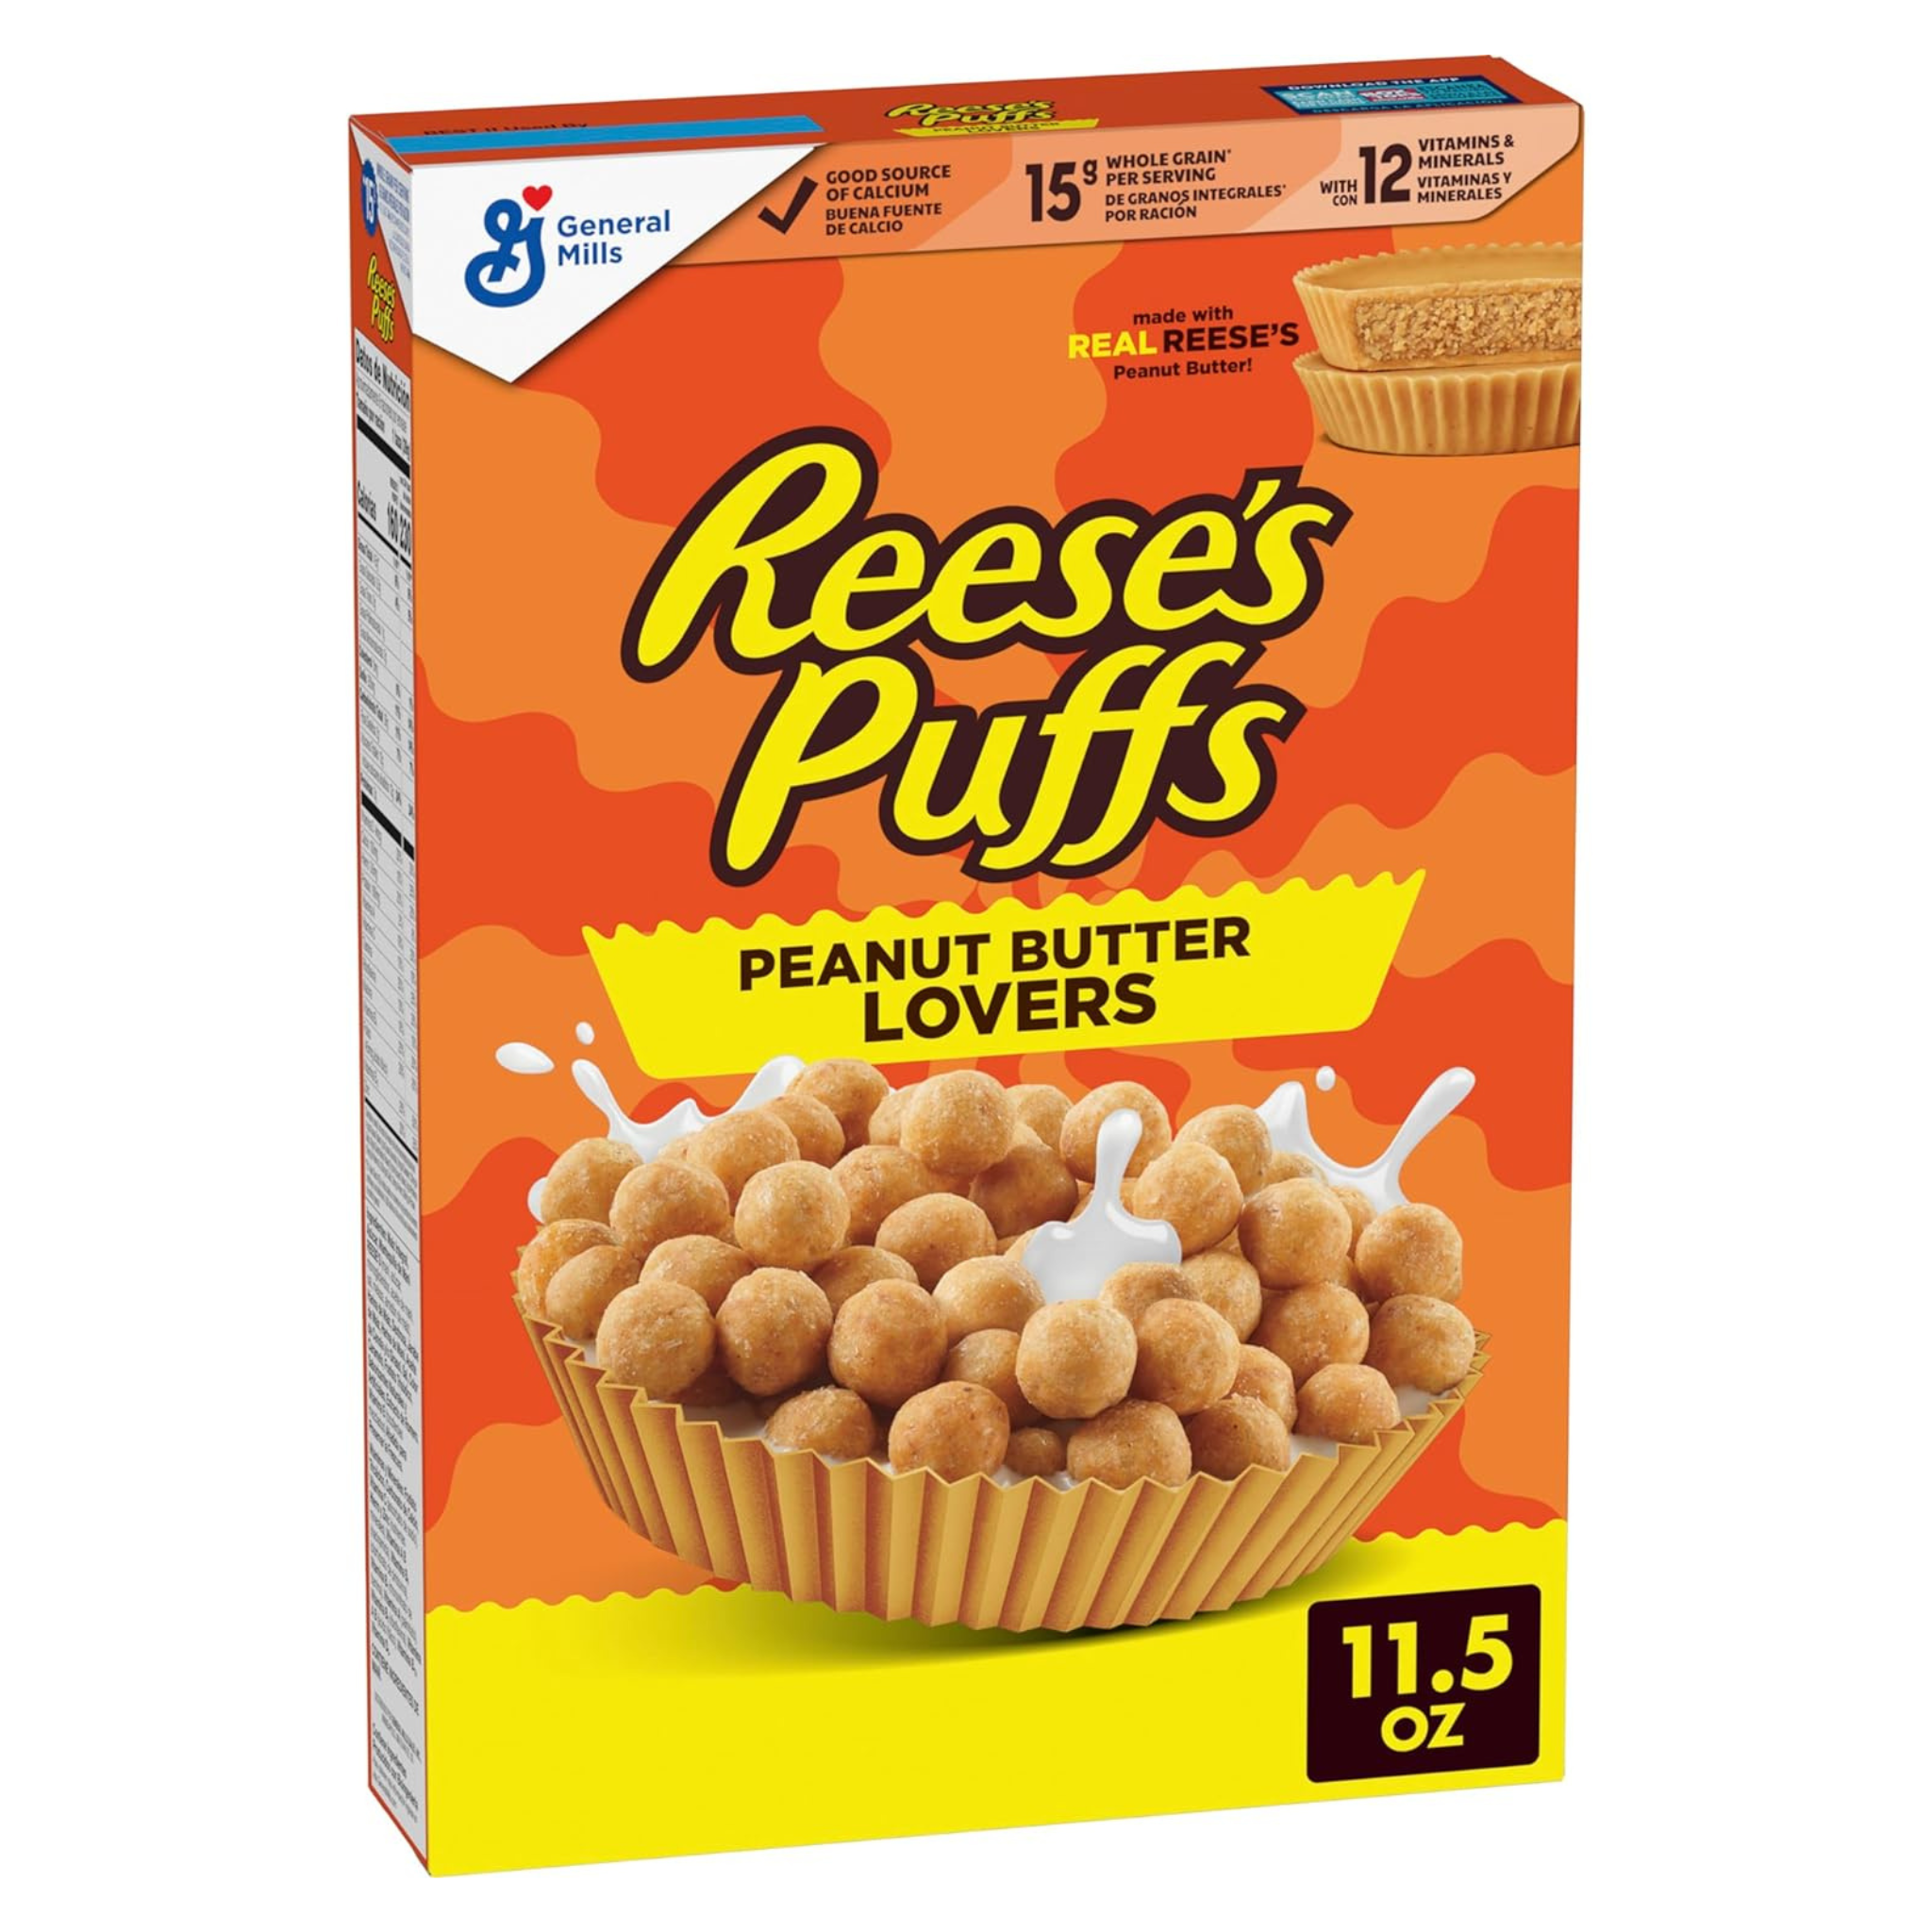 Reese's Puffs Peanut Butter Lovers Breakfast Cerea, 11.5 oz